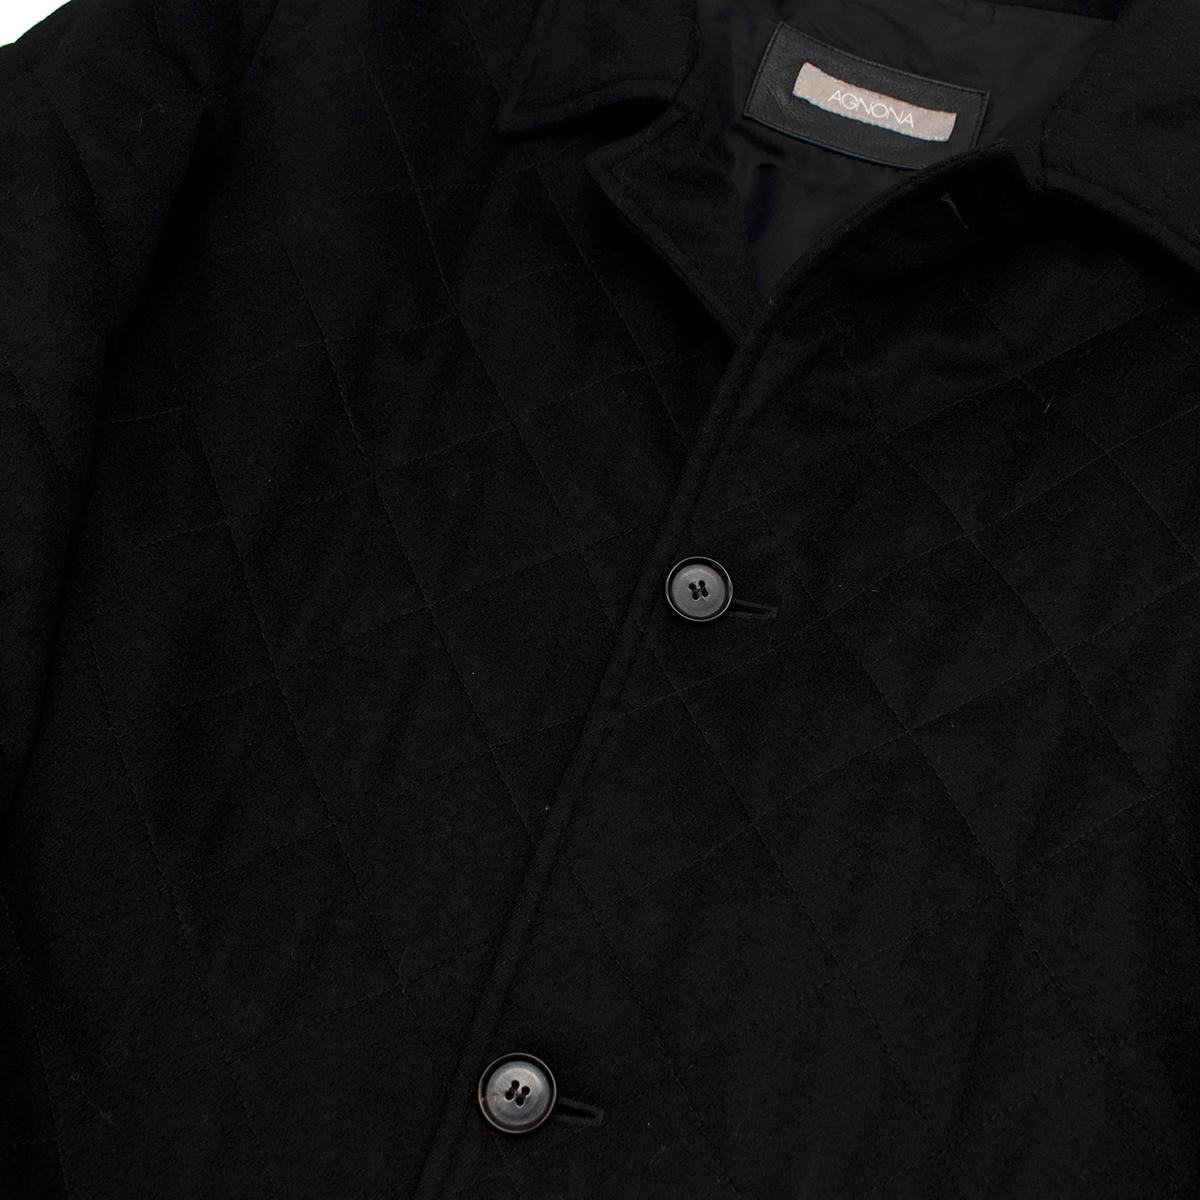 Agnona Black Cashmere Blend Coat - Size L For Sale 1